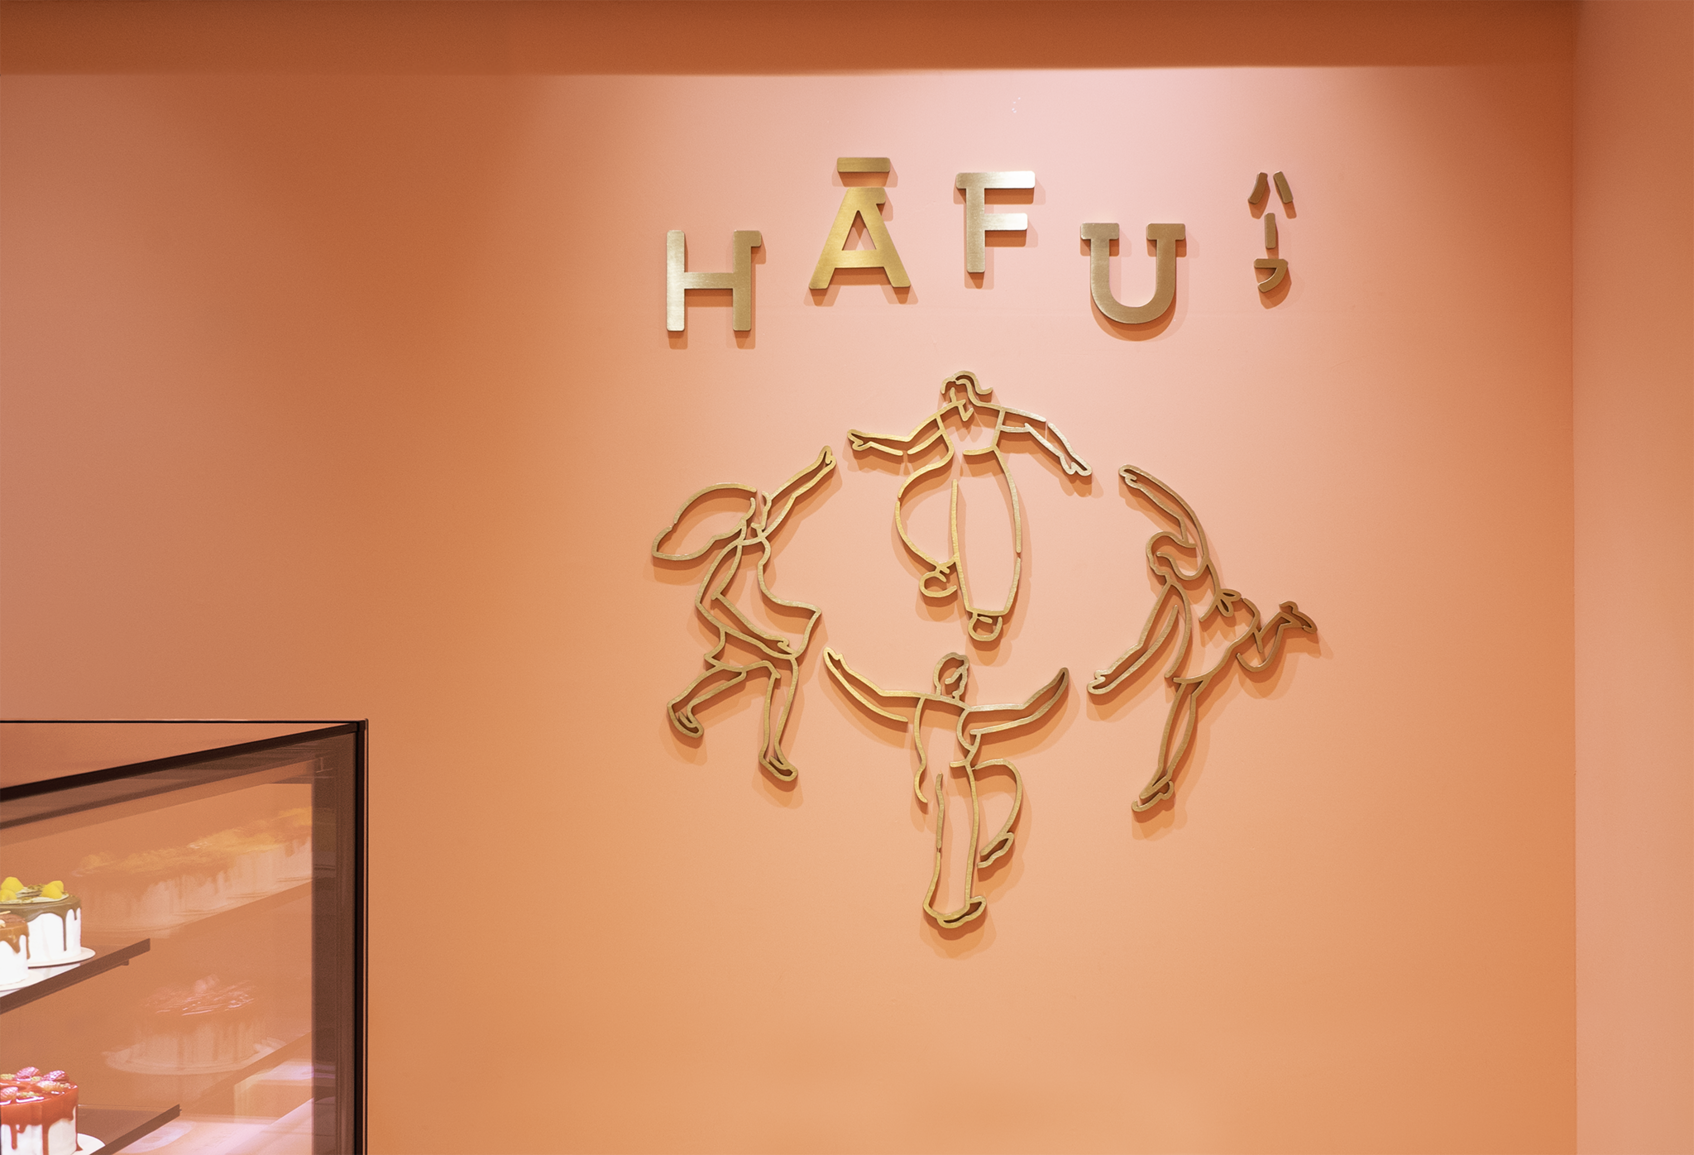 Hāfu ハーフ-5